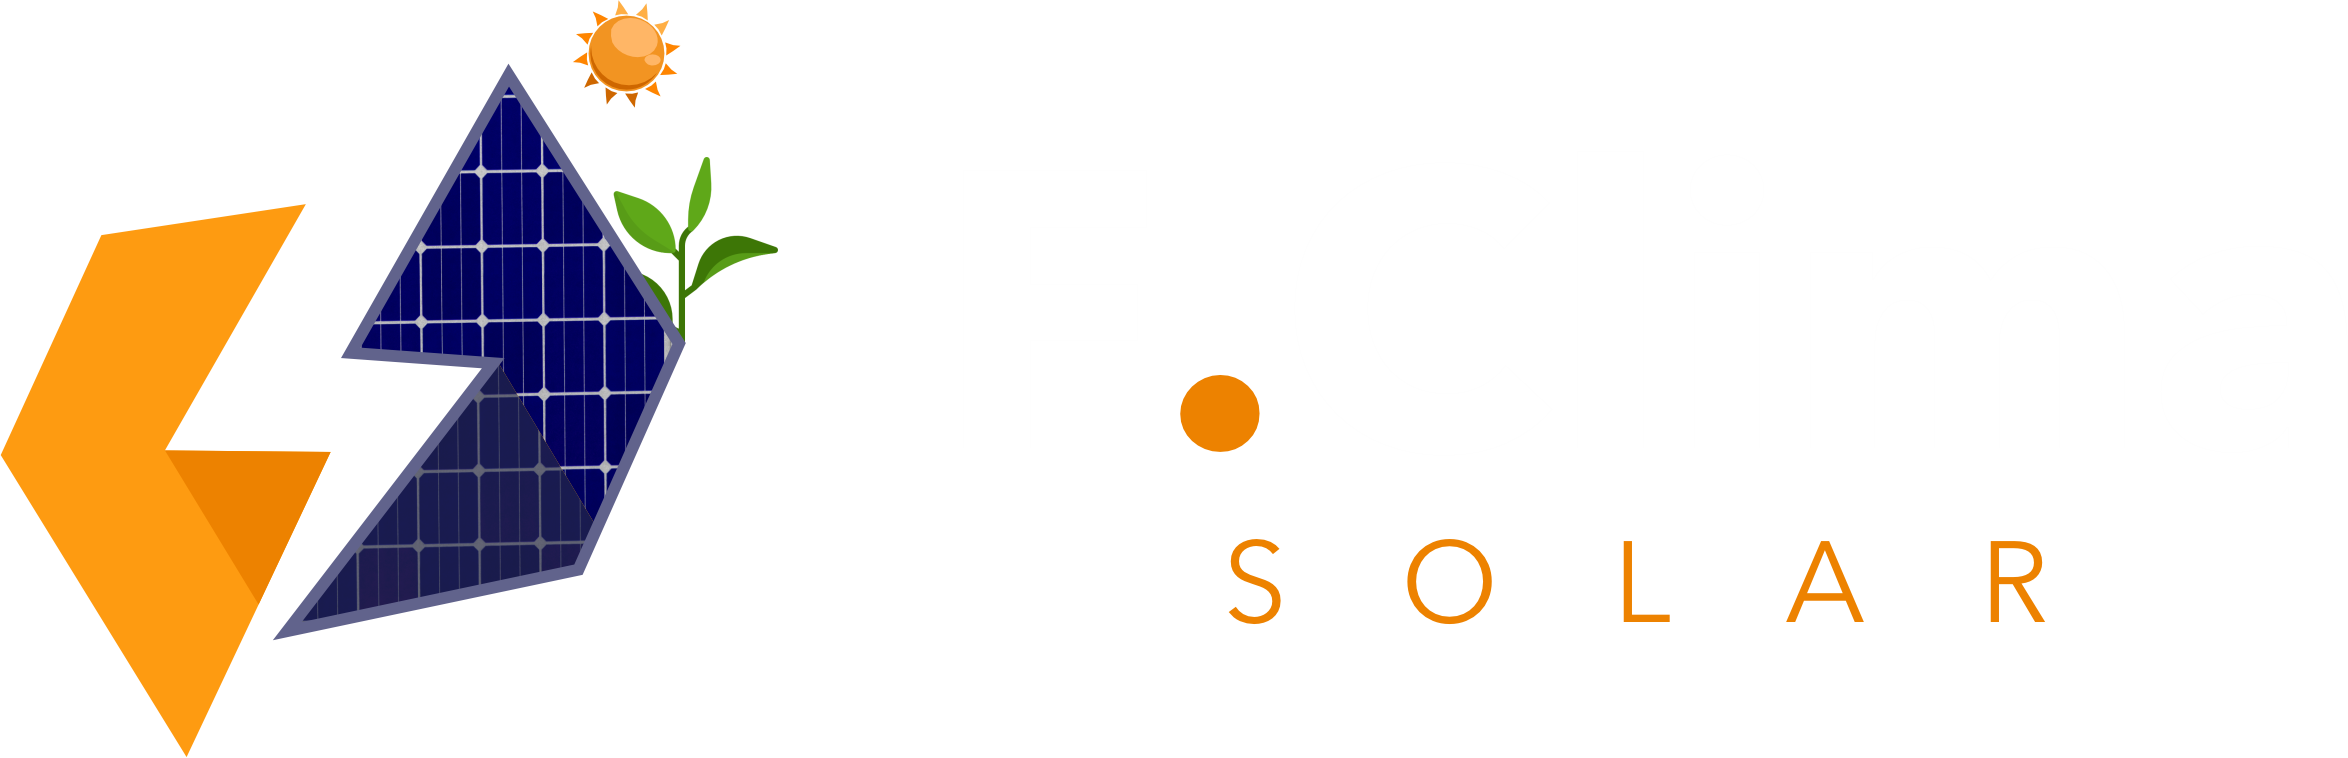 FClima